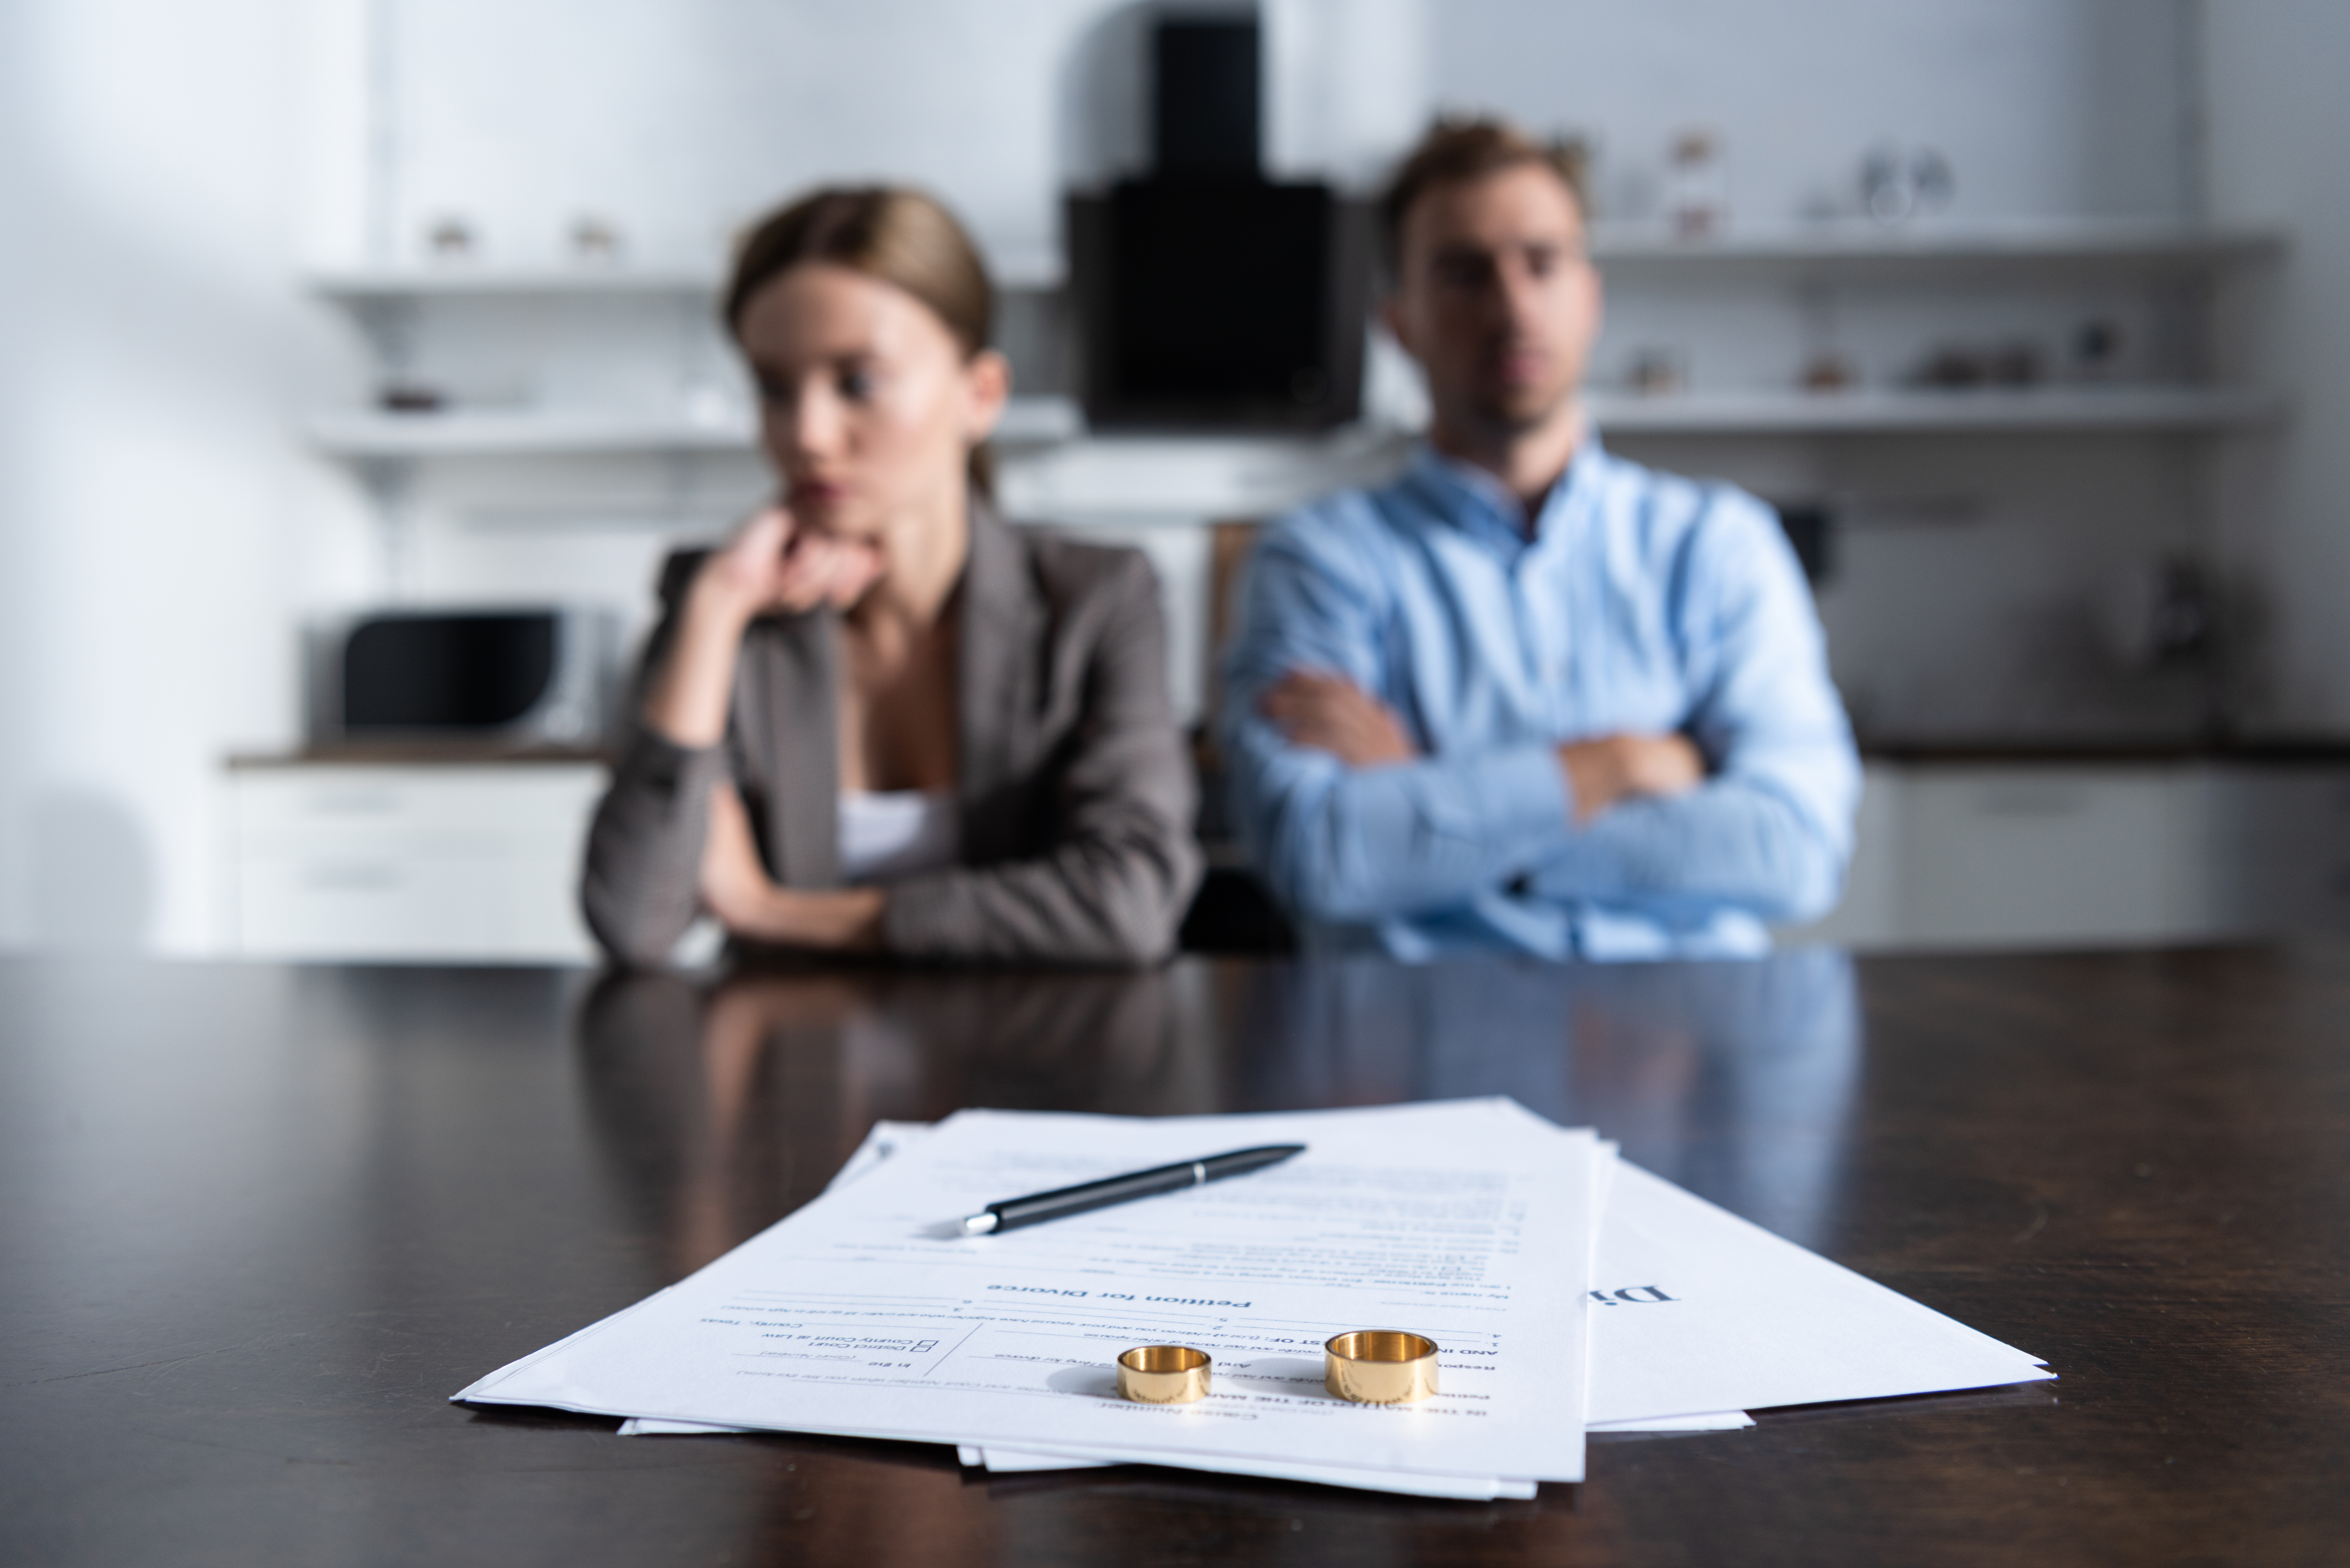 Des personnes en train de divorcer | Source : Shutterstock